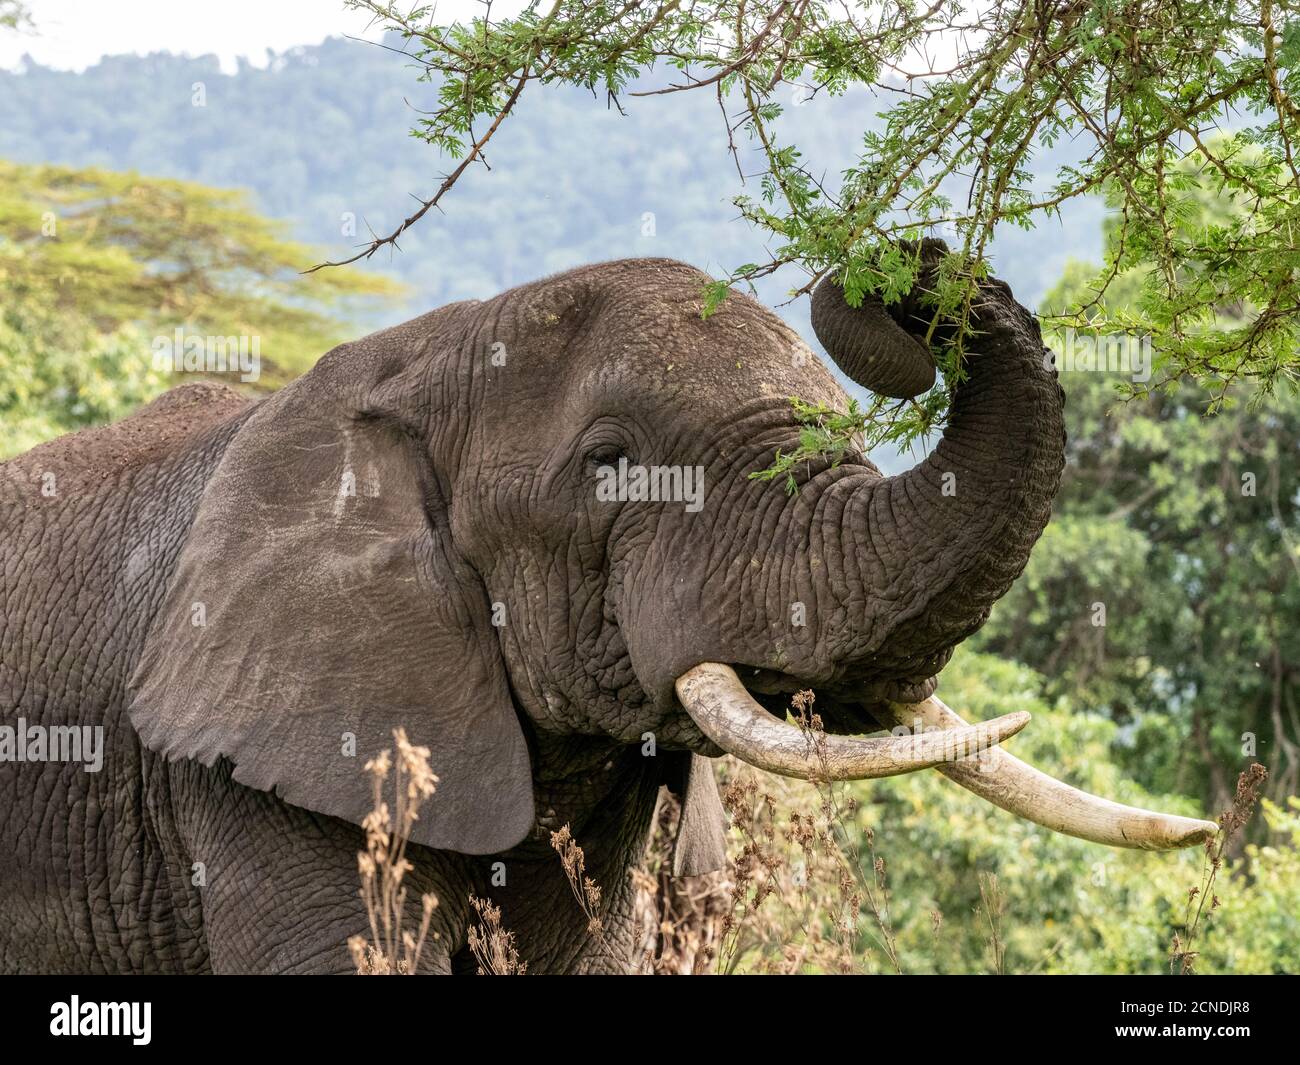 Éléphant de brousse africain (Loxodonta africana), se nourrissant à l'intérieur du cratère de Ngorongoro, Tanzanie, Afrique de l'est, Afrique Banque D'Images